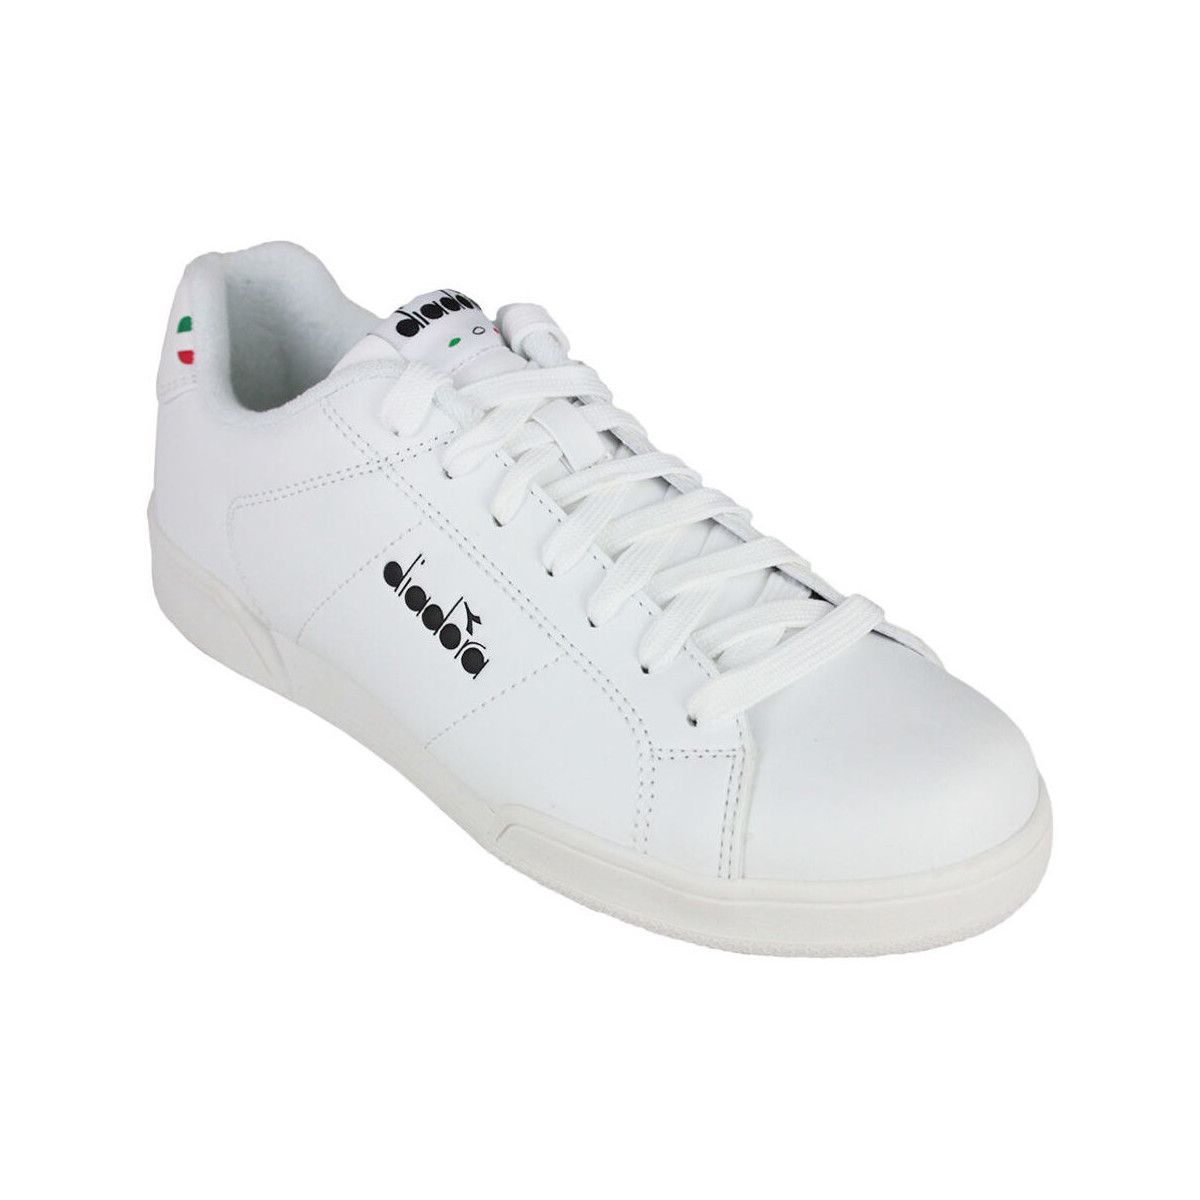 Scarpe Uomo Sneakers Diadora 101.177191 01 C0351 White/Black Nero